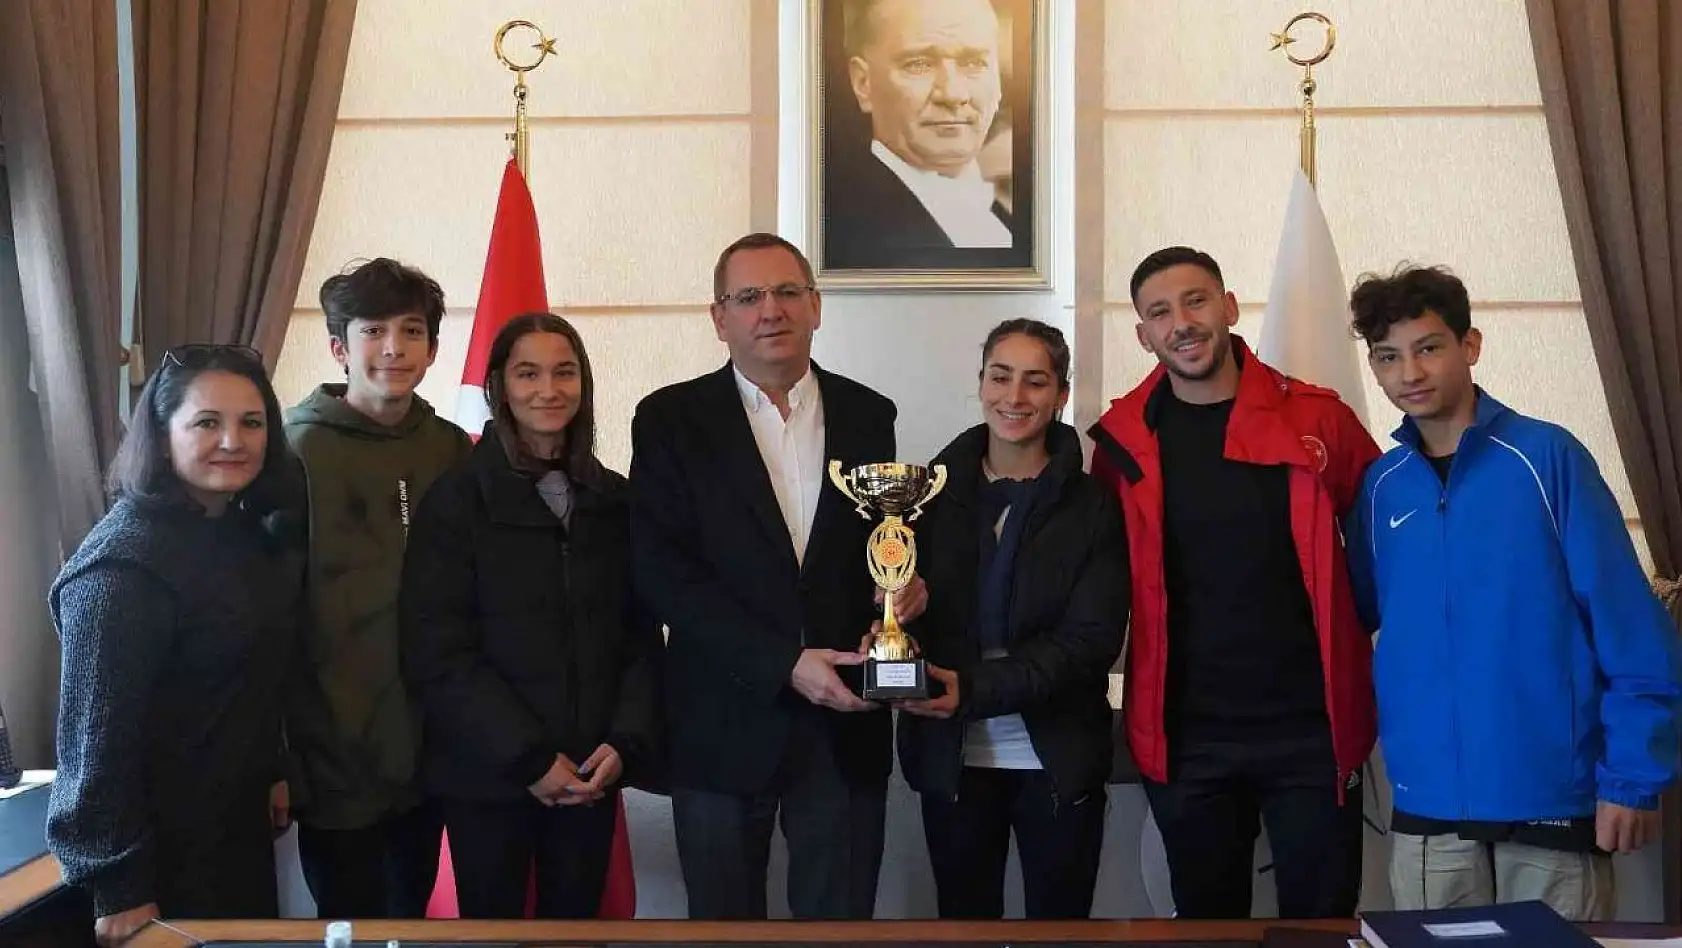 Ayvalıklı atletler Türkiye Şampiyonası öncesinde buluştu